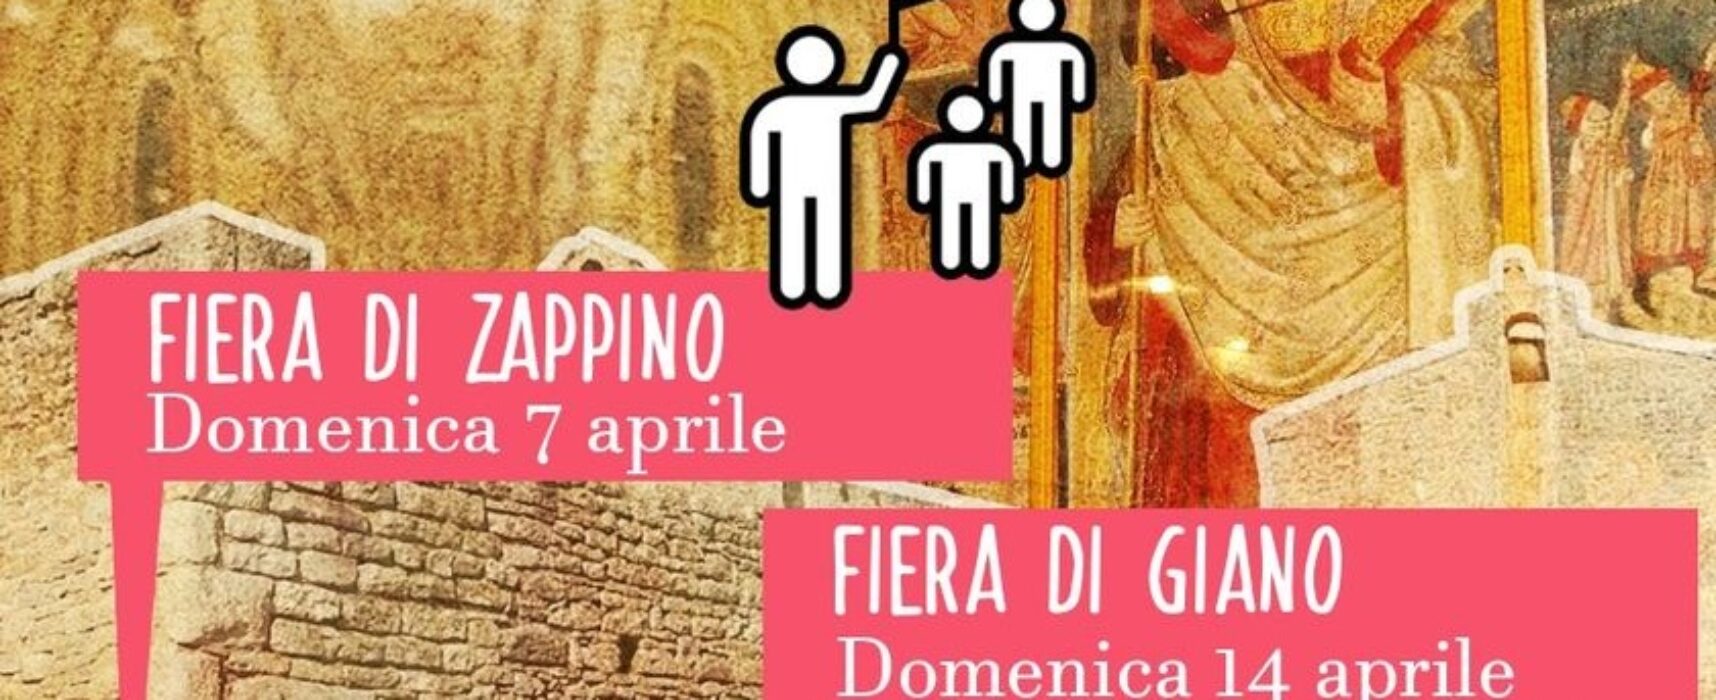 Passeggiate di Primavera a Zappino e Giano, il programma della Pro Loco Bisceglie